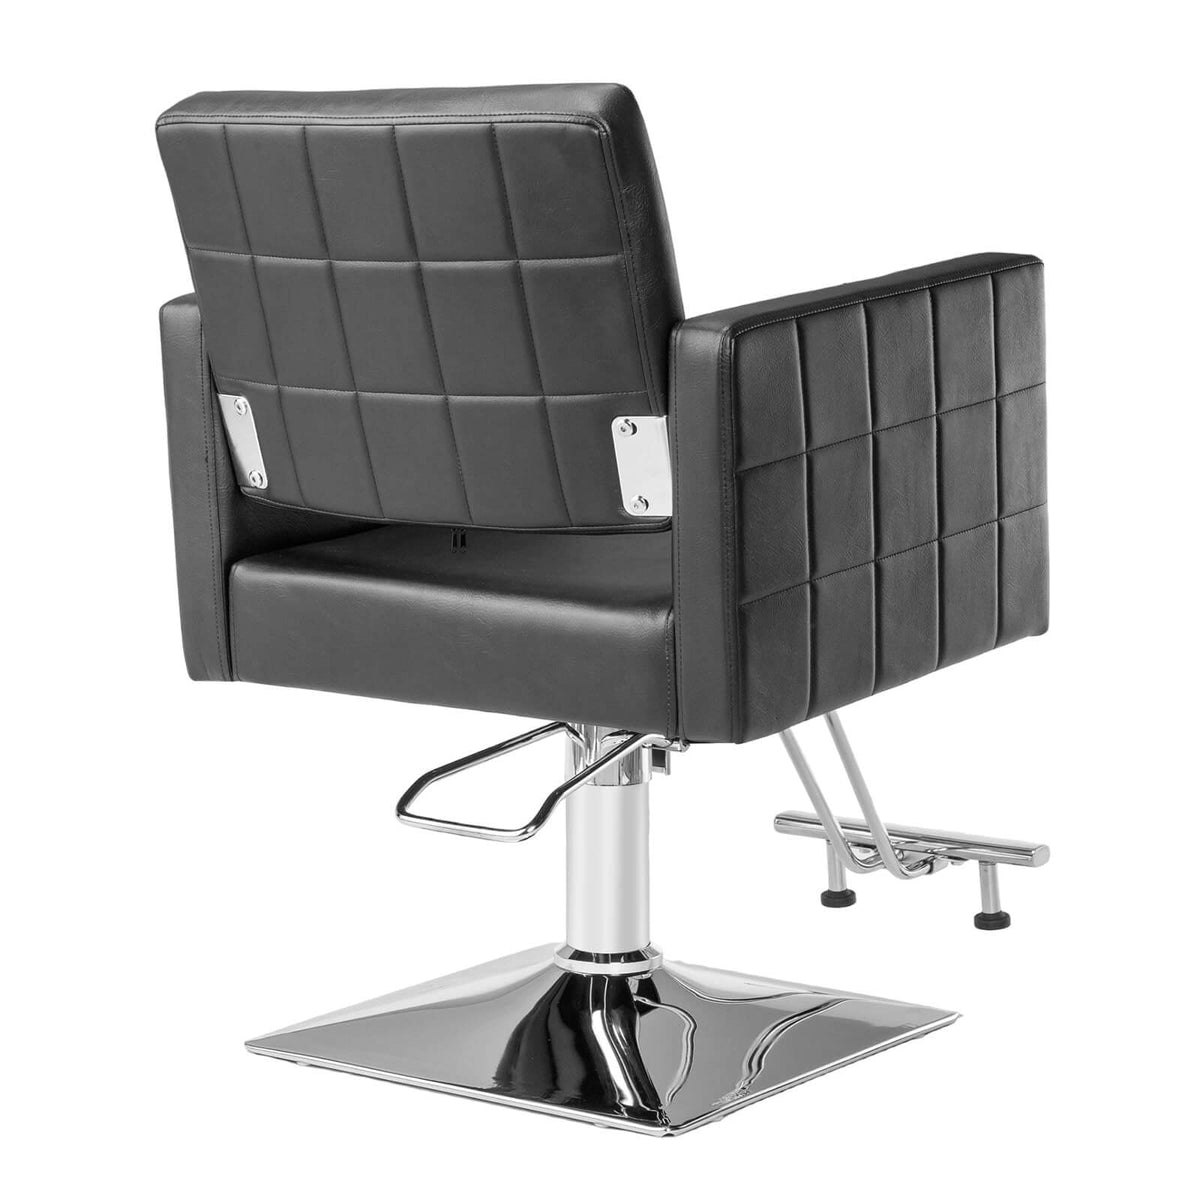 OmySalon SC2001 Heavy Duty Hydraulic Wide Seat Hair Stylist Salon Chair